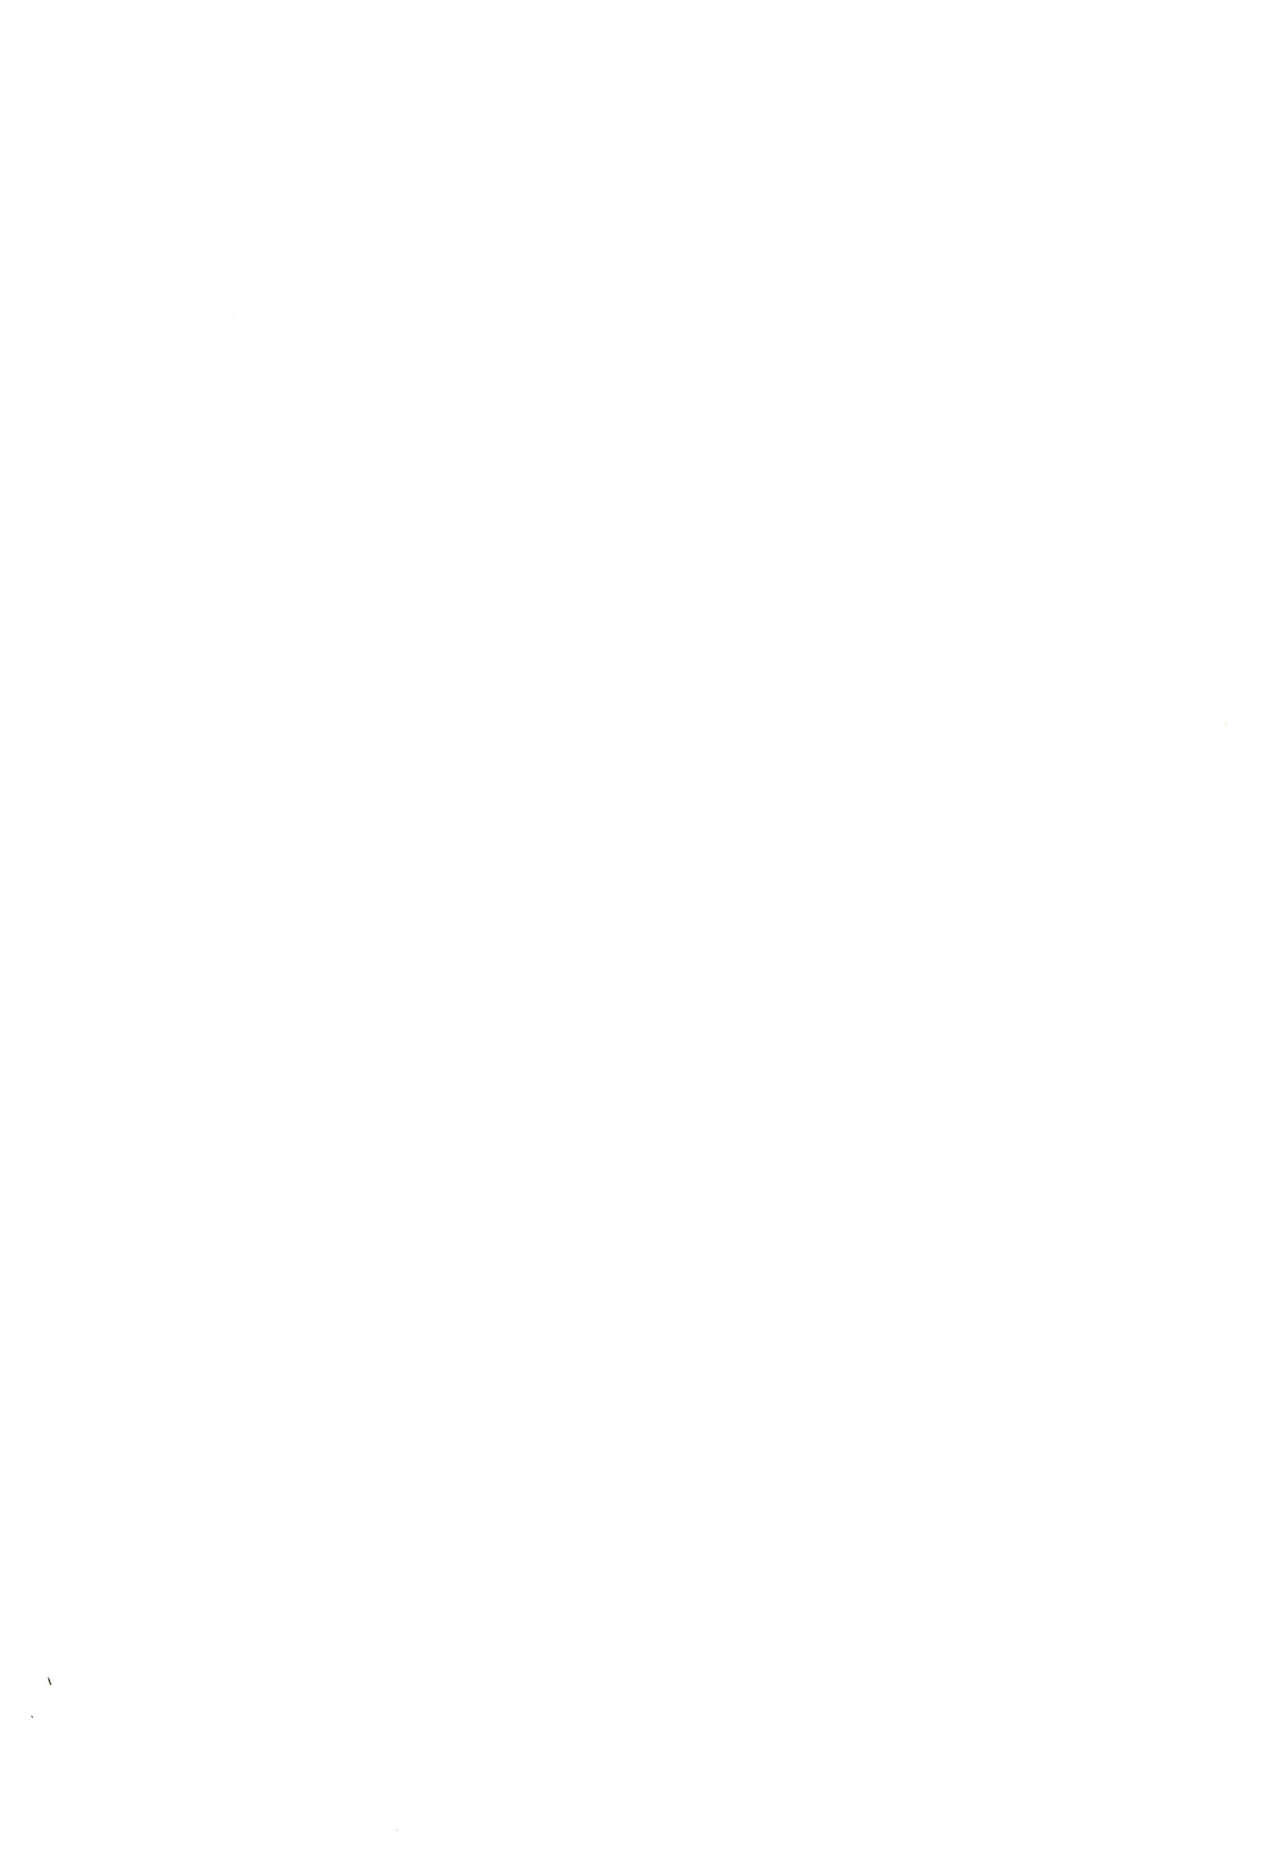 (僕らのラブライブ! 9) [ポンコツアフロ (桜井瑞希)] にこまき10年後 磁石なふたりの愛情狂現 (ラブライブ!)